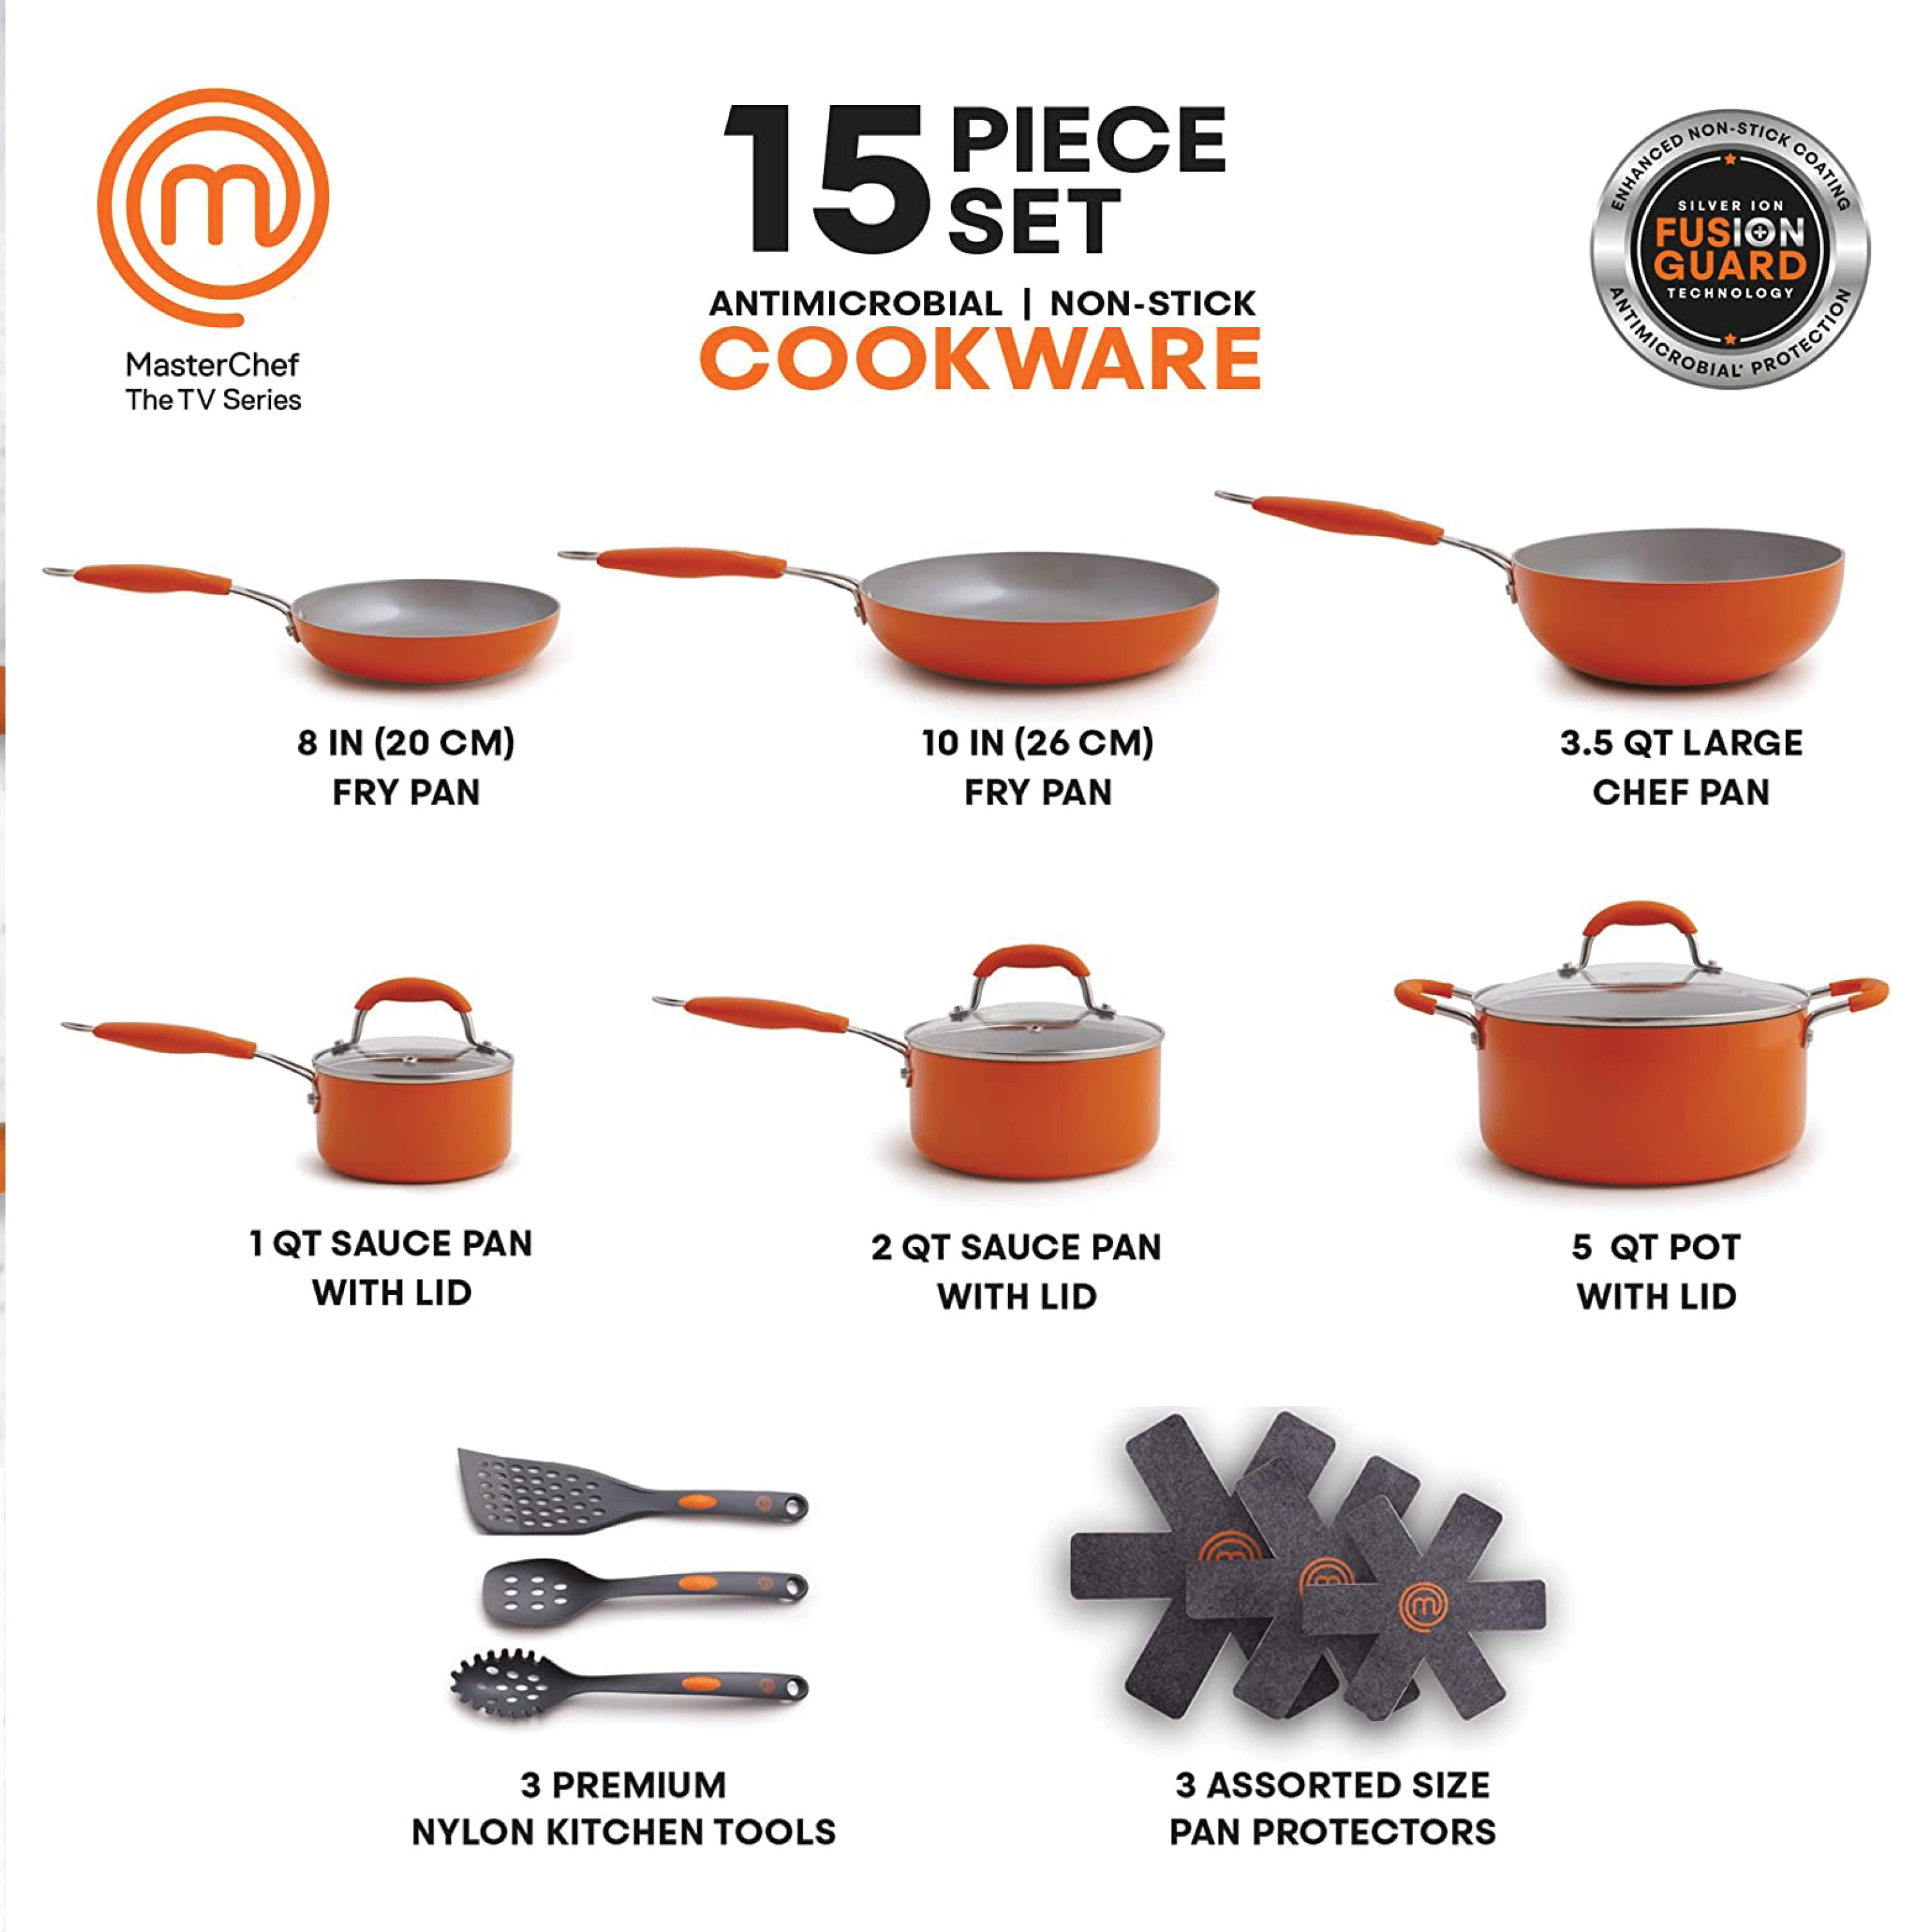 MasterChef MC3003 5 Pieces Champions Fry & Steam Steam Cook Set Orange